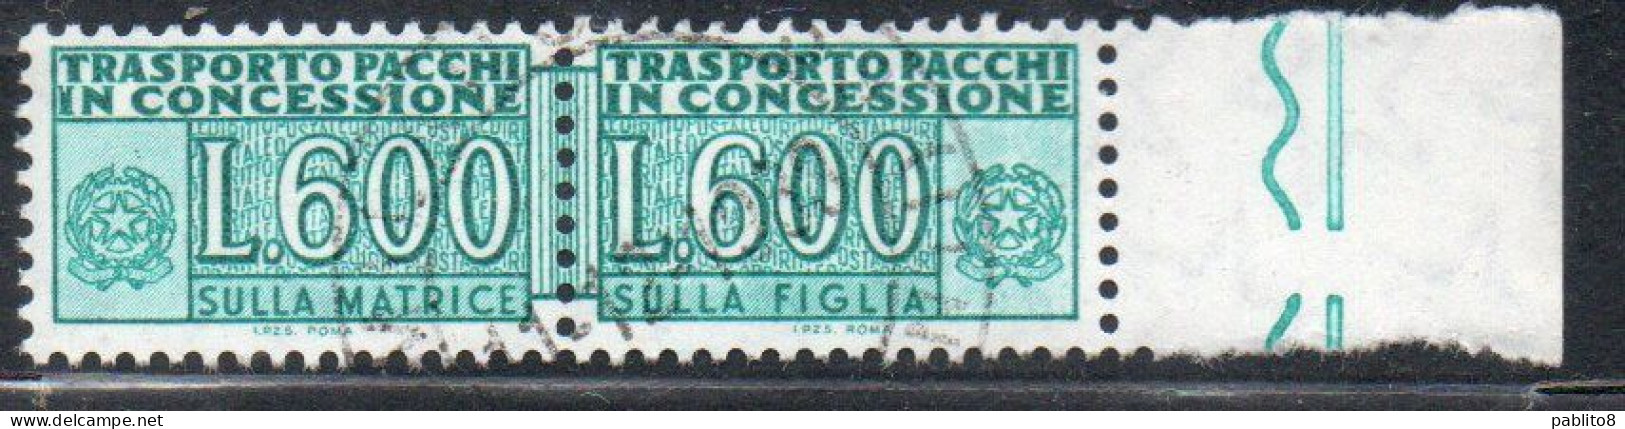 ITALIA REPUBBLICA ITALY REPUBLIC 1955 1981 PACCHI IN CONCESSIONE PARCEL POST STELLE STARS 1979 LIRE 600 USATO USED OBLIT - Concessiepaketten